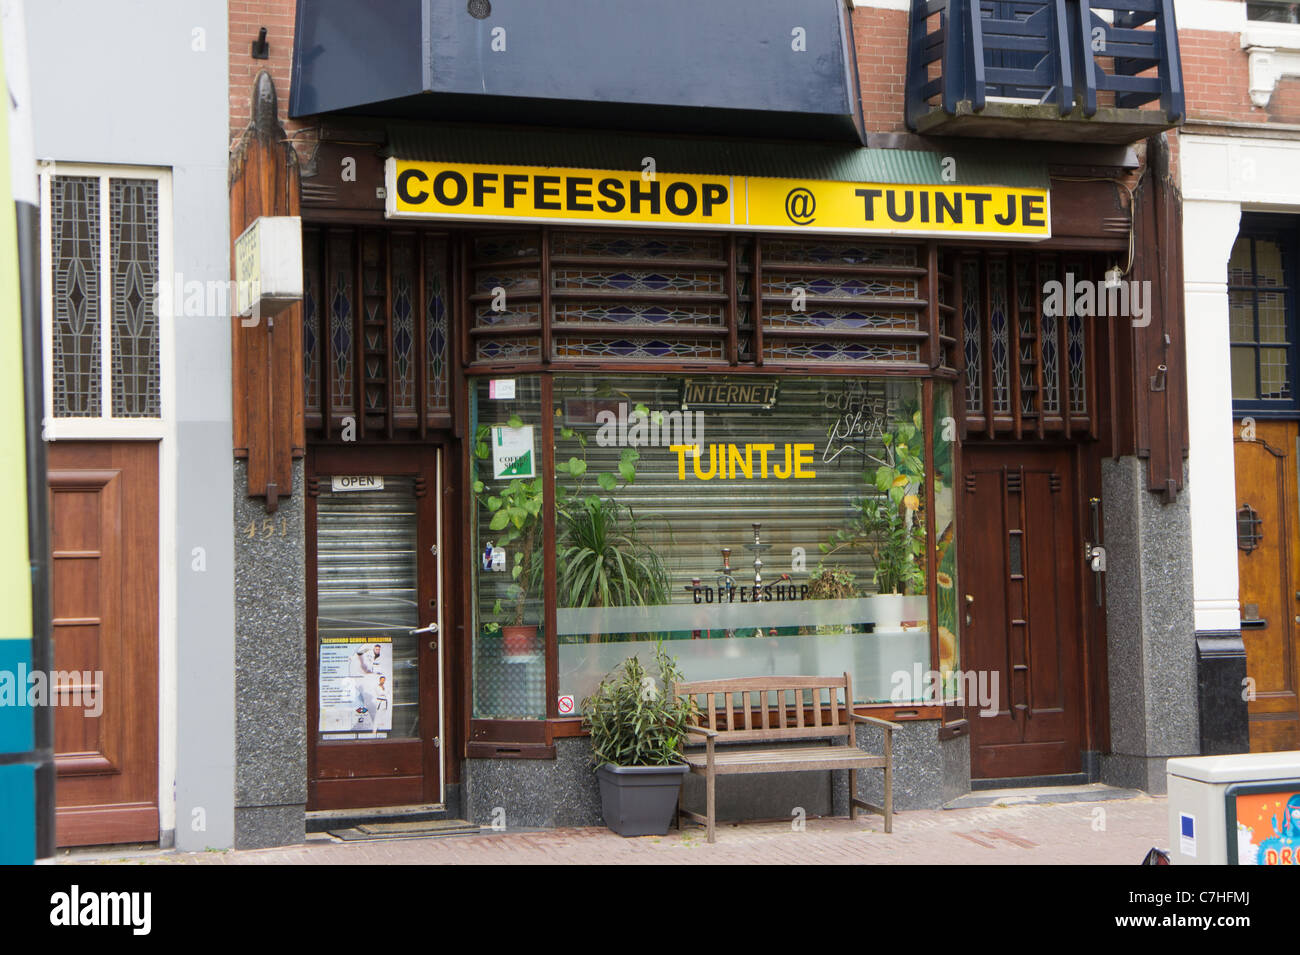 "Coffee Shop" in Amsterdam. Holländischen Coffeeshops sind lizenziert, um kleine Mengen von Cannabis zu verkaufen. Stockfoto